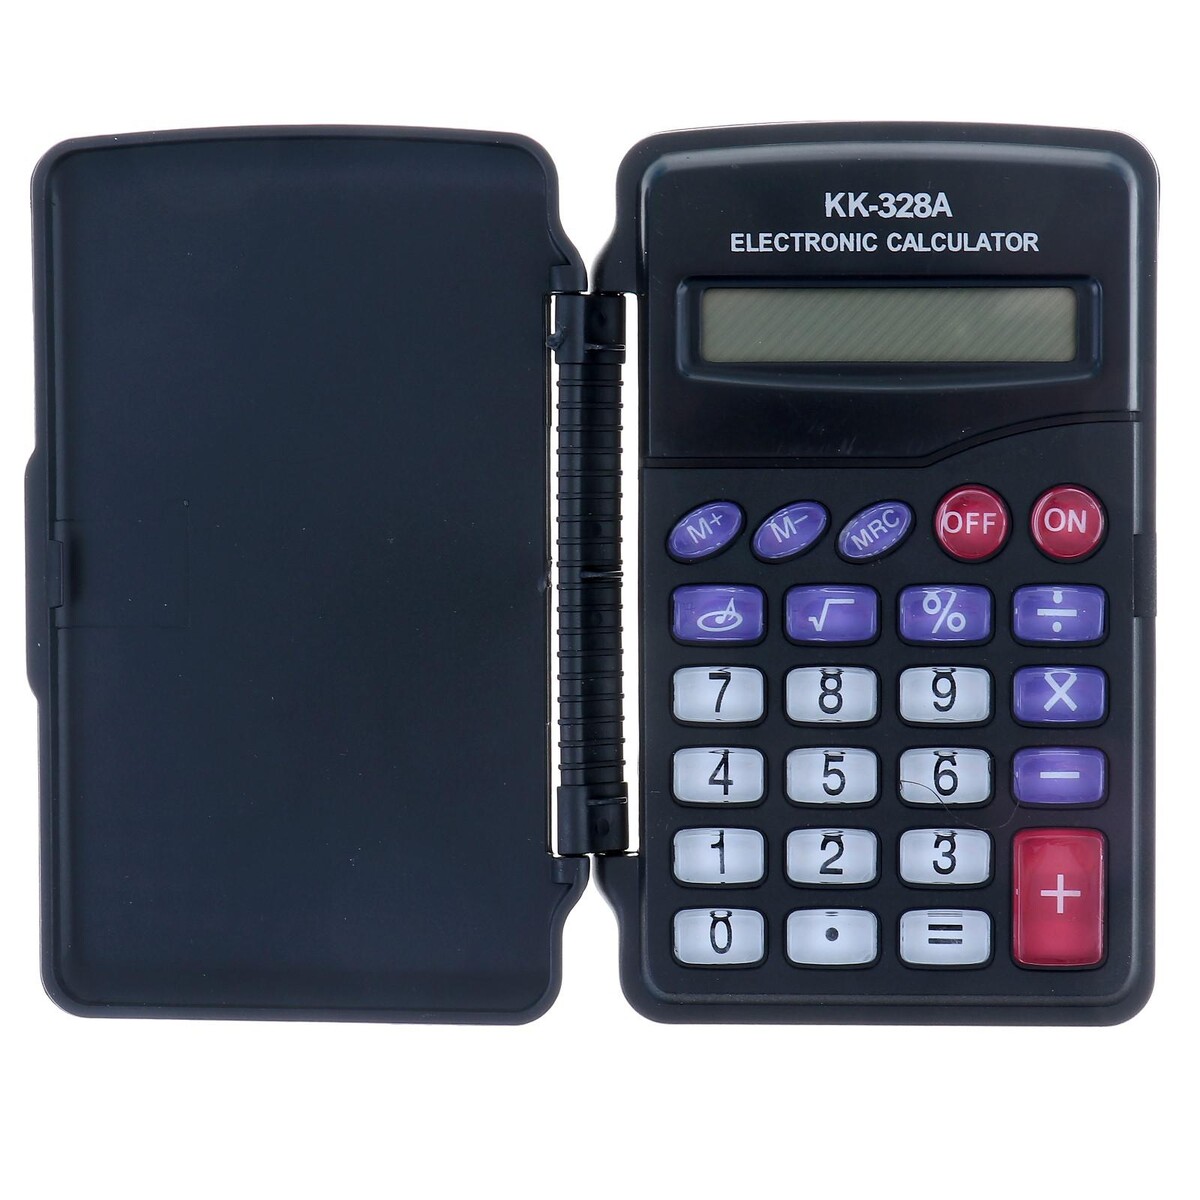 Калькулятор карманный, 8-разрядный, kk-328, с мелодией калькулятор карманный 8 разрядный kk 328 с мелодией